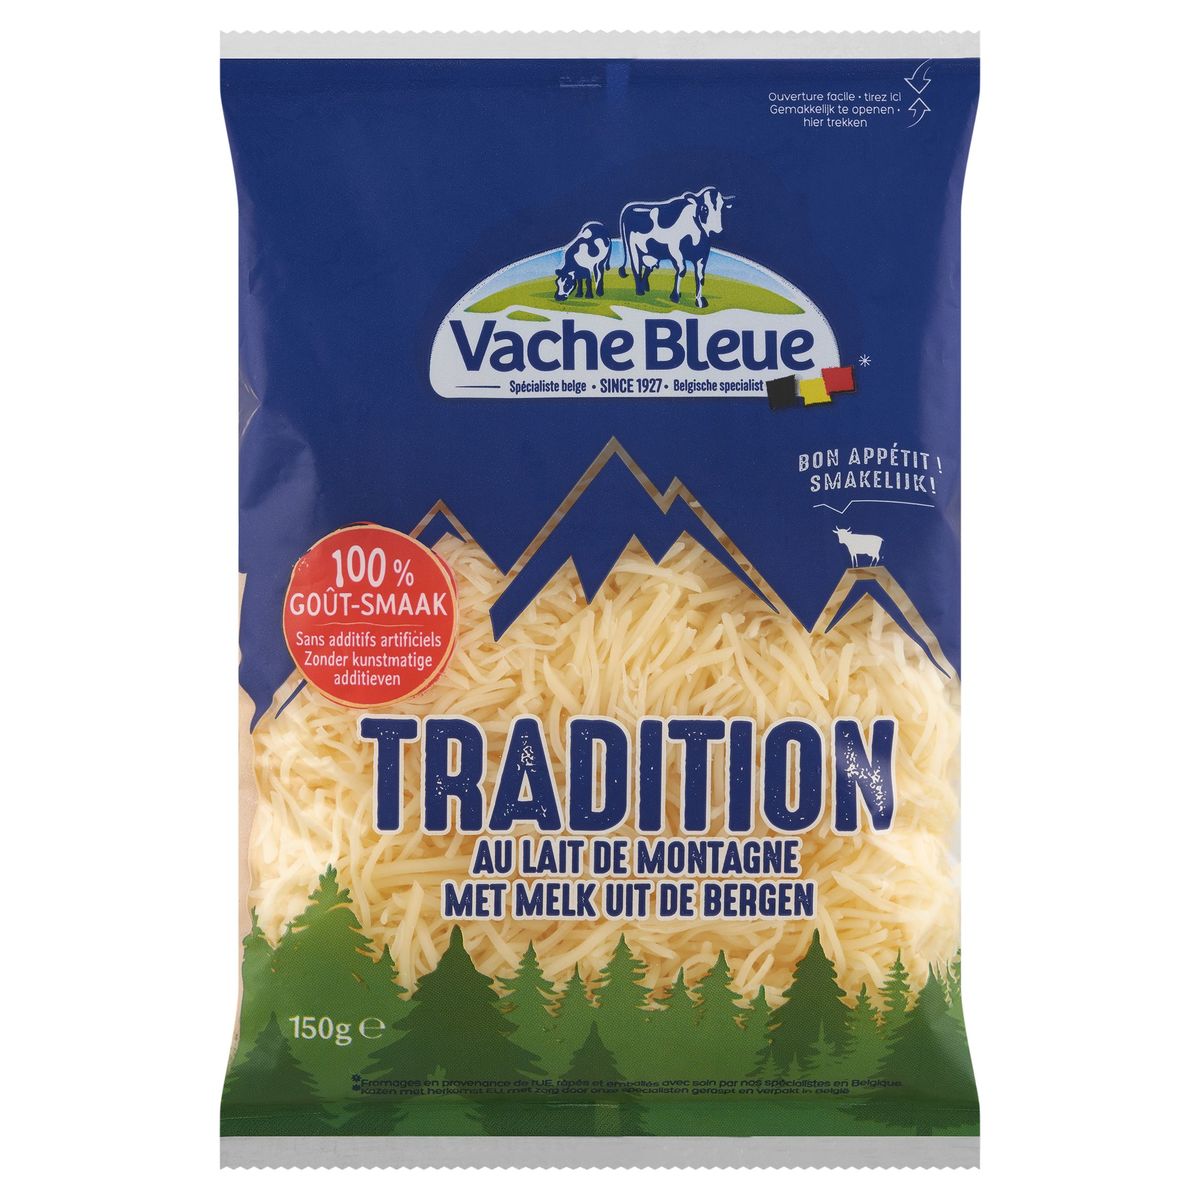 Vache Bleue Tradition met Melk uit de Bergen 150 g